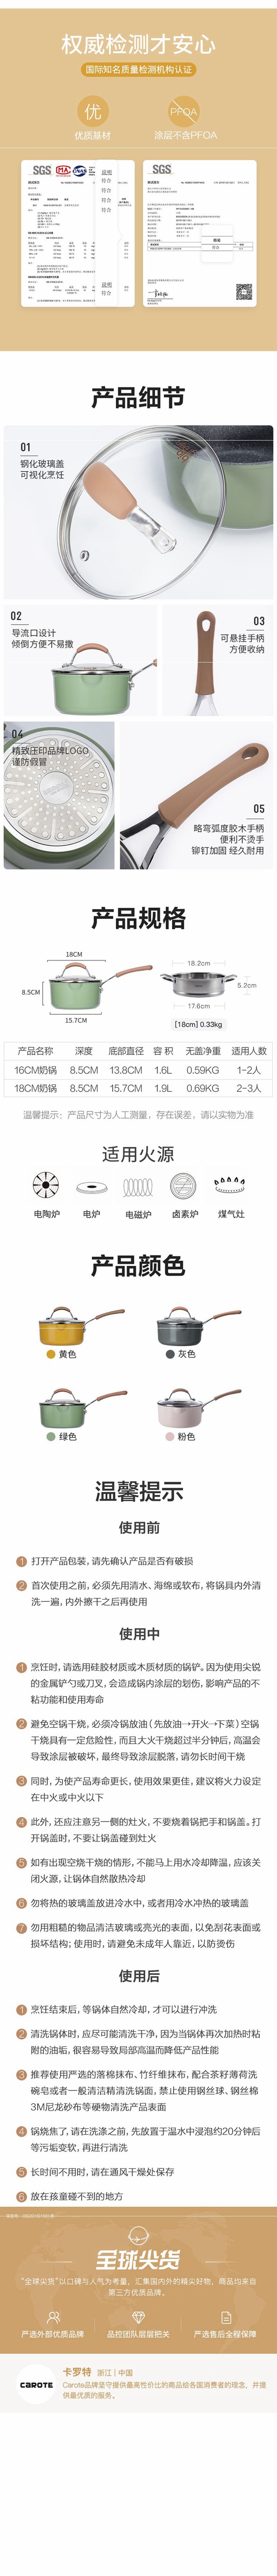 网易严选多色可选多功能锅 一锅多用轻松烹饪 奶锅 (绿色)18cm+蒸笼